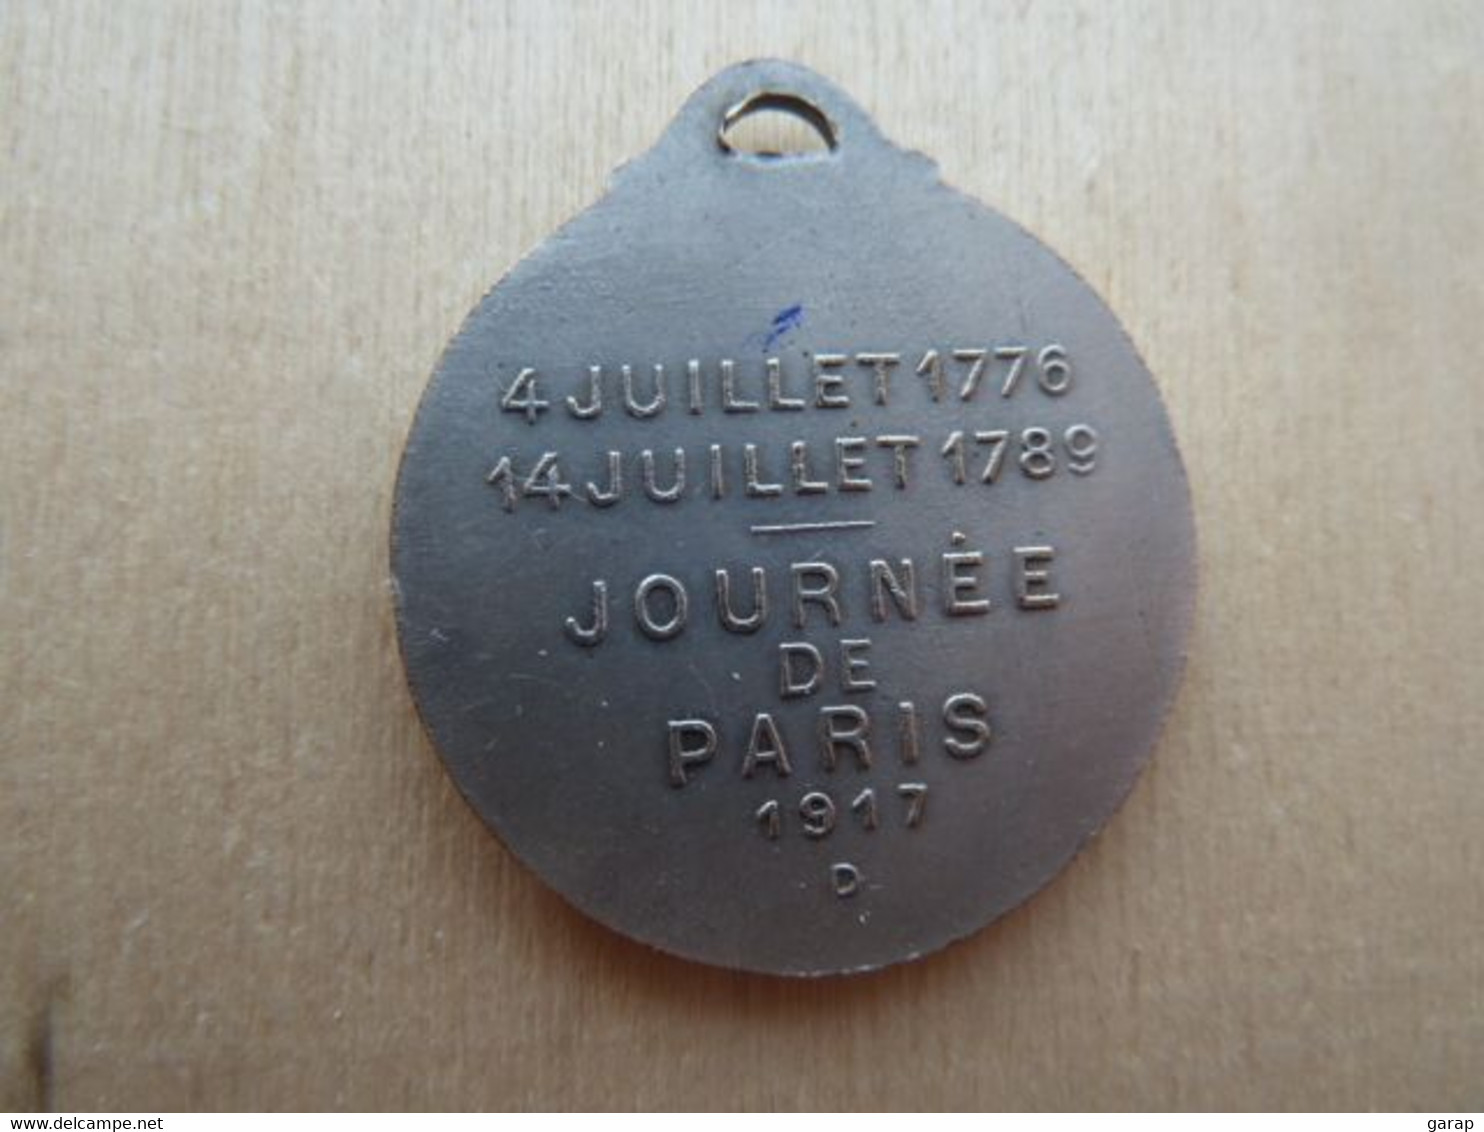 DA-126 Médaille Métal Gris Washington Lafayette Signée Gaston Lavrillier Paris -art.Journées De Paris 1917 - Riviste & Cataloghi